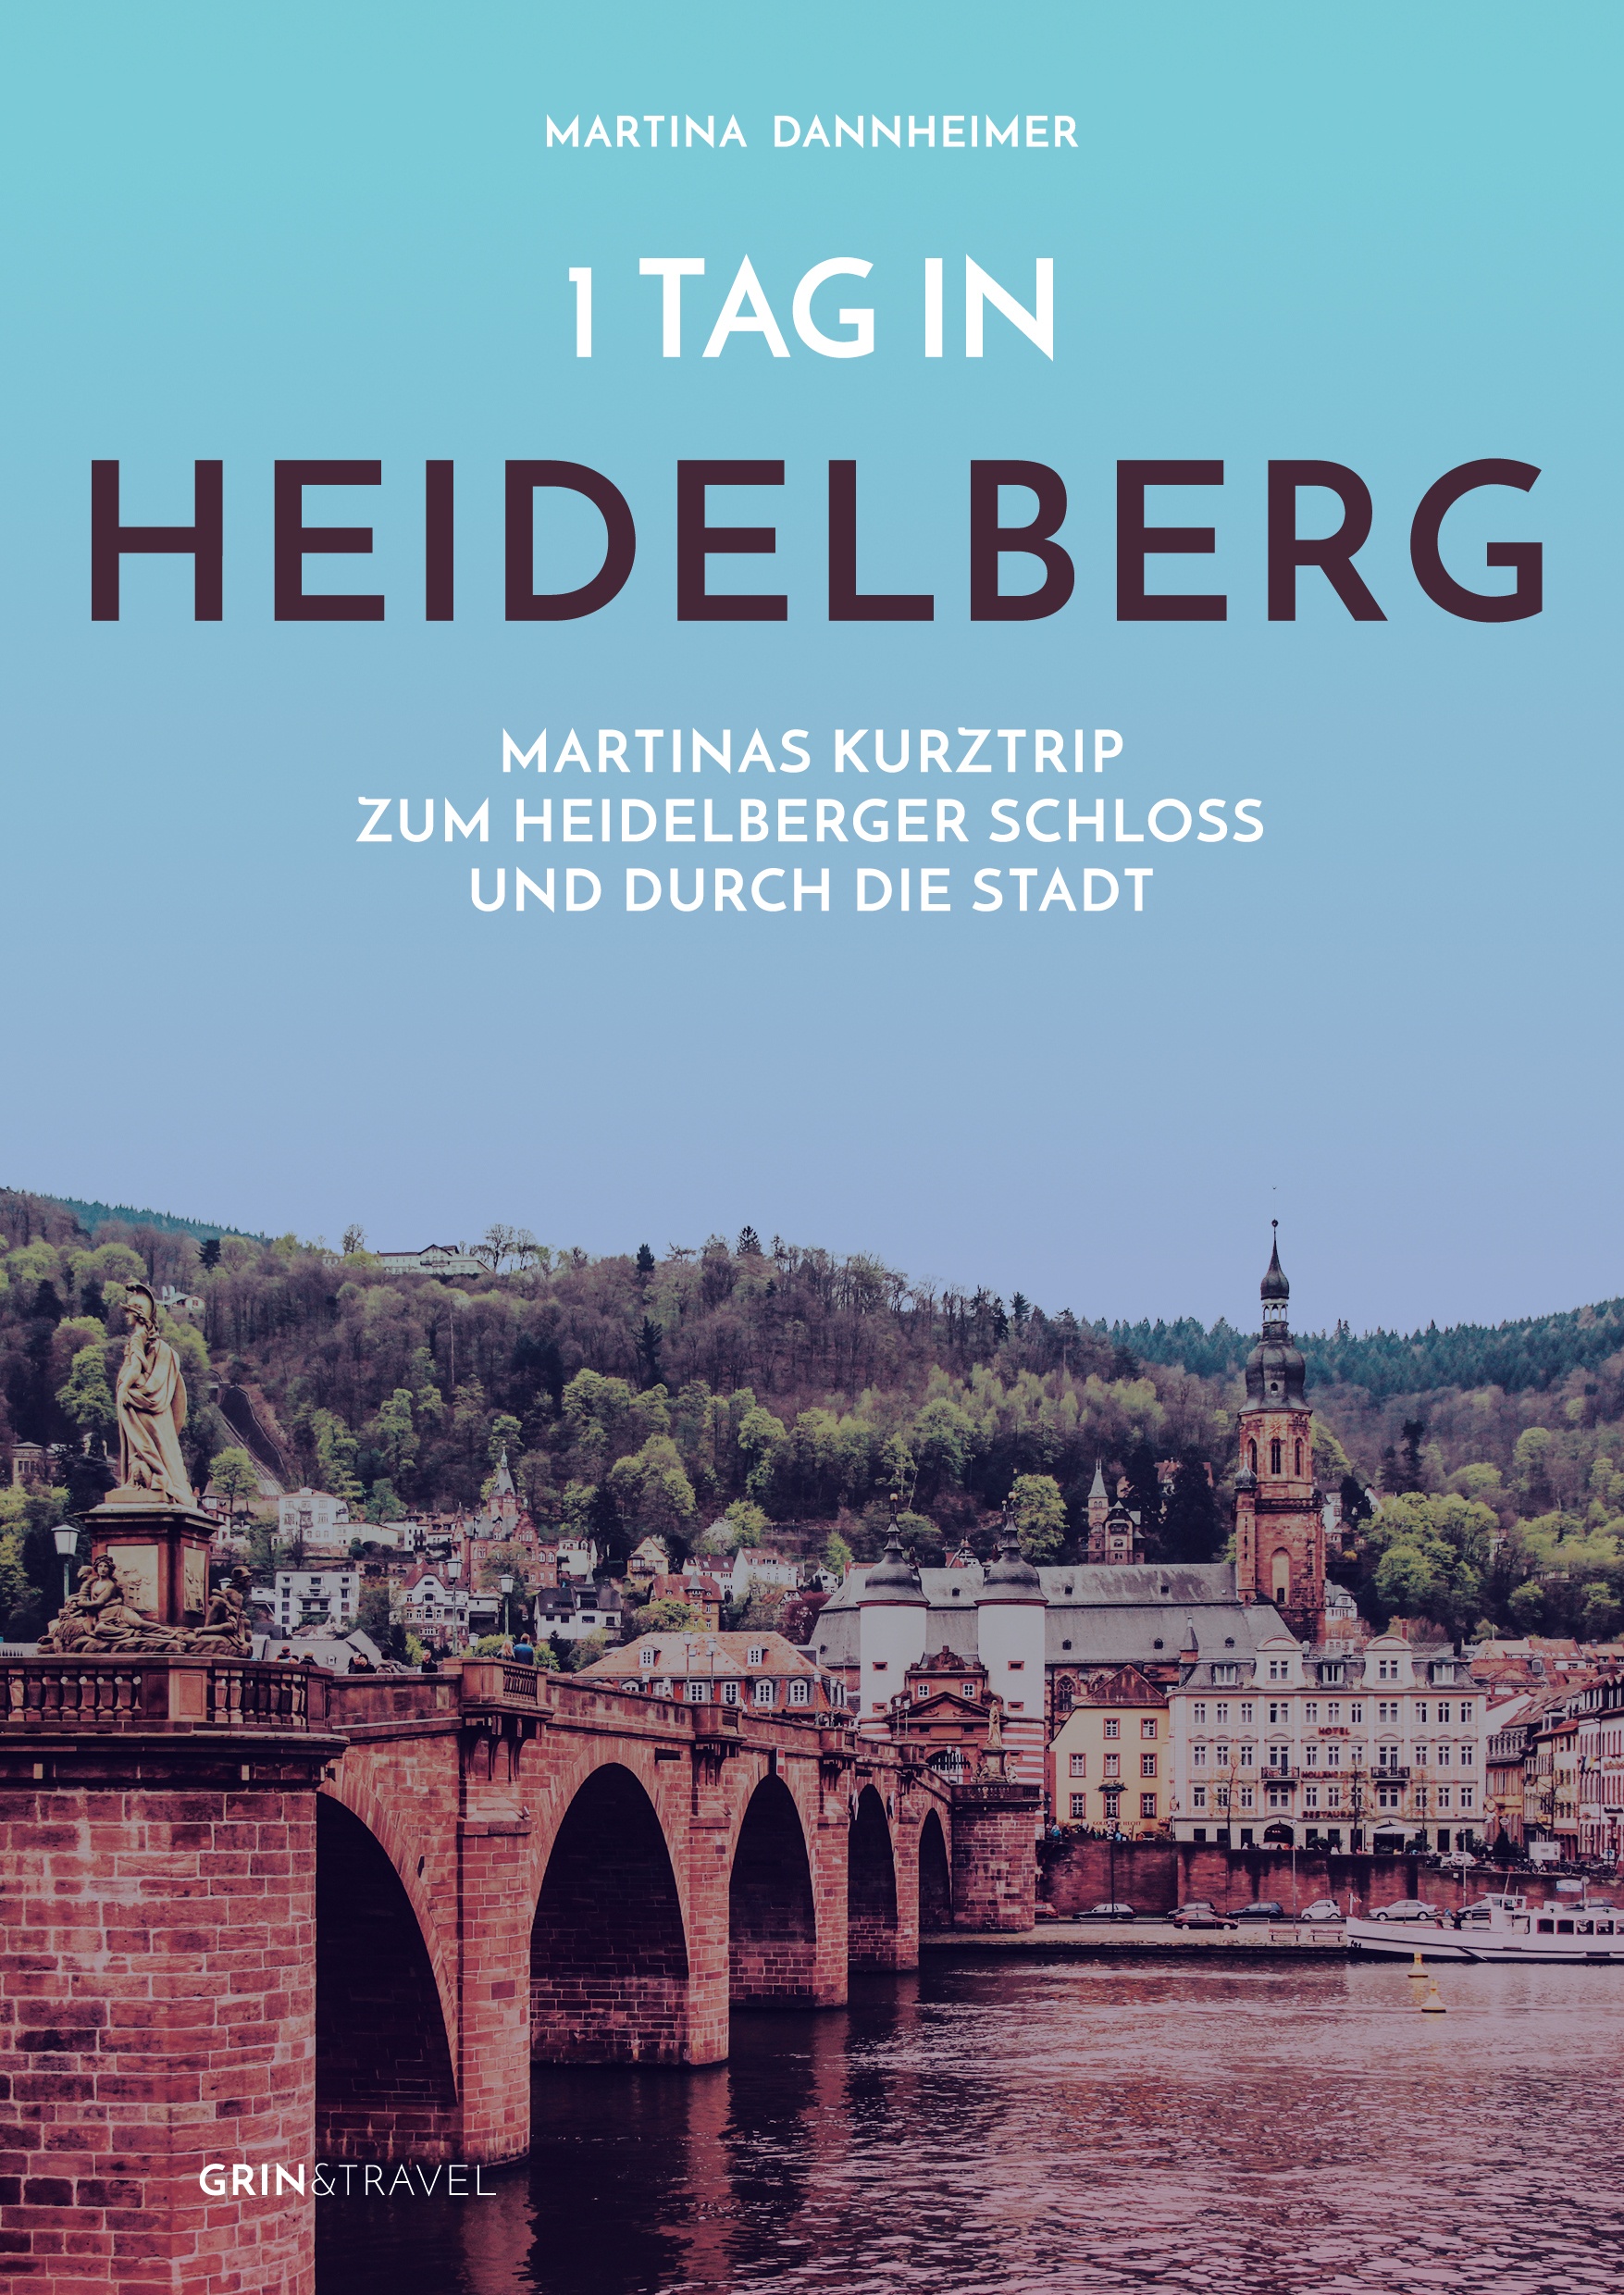 Título: 1 Tag in Heidelberg